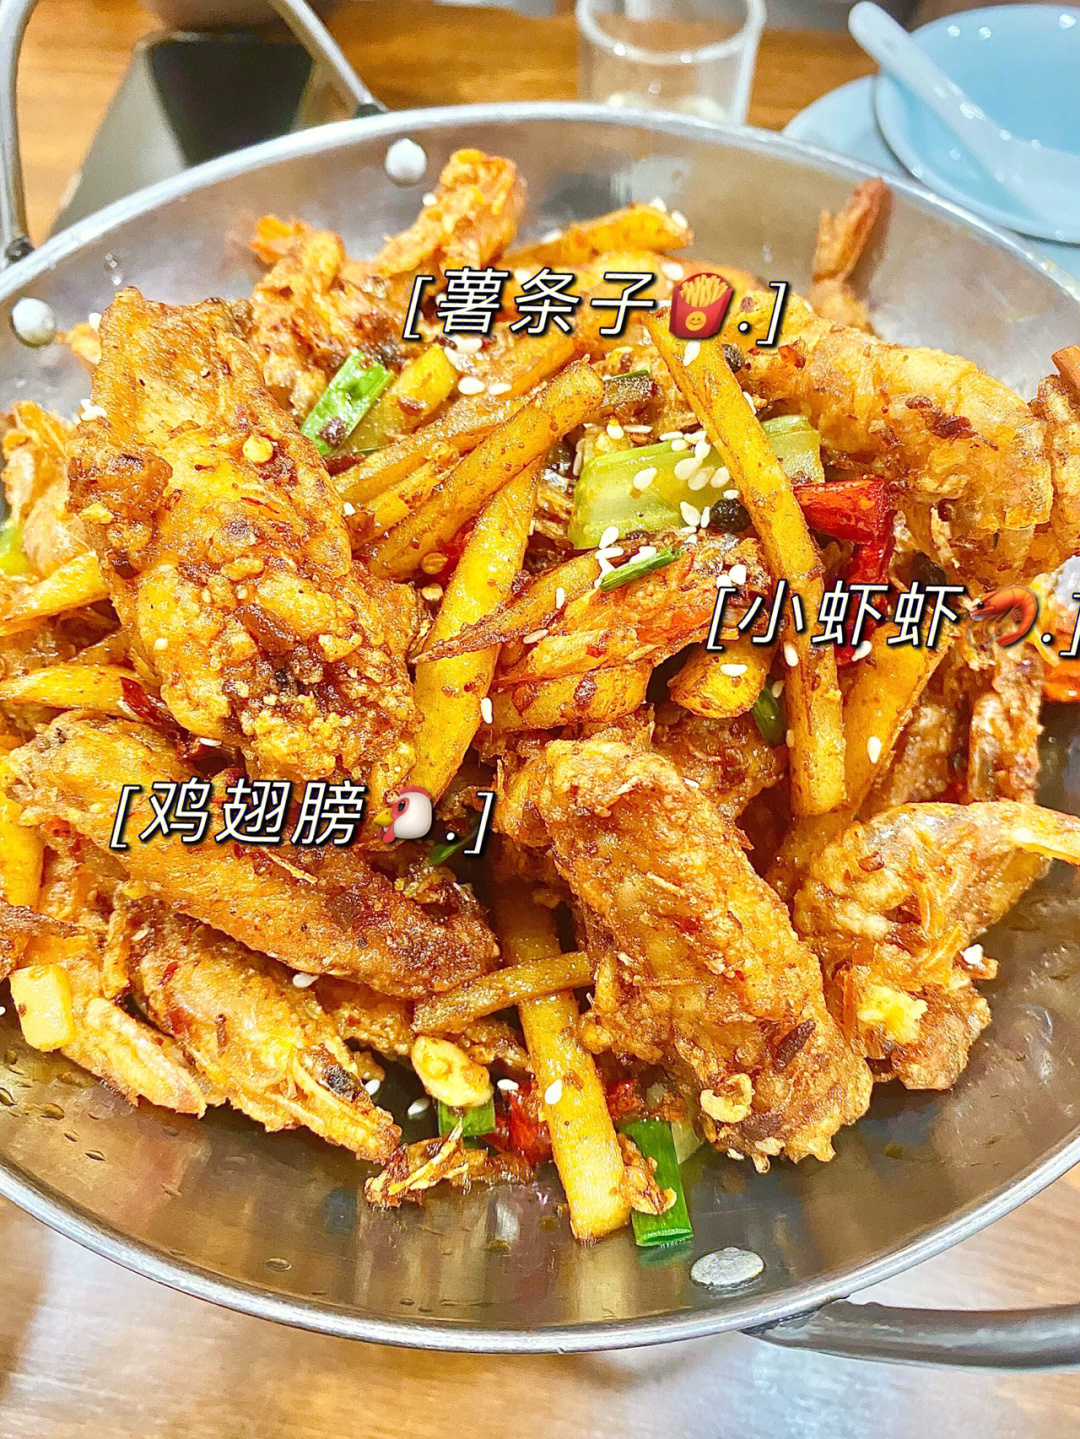 杭州美食no266366小破店里的干锅鸡翅虾08